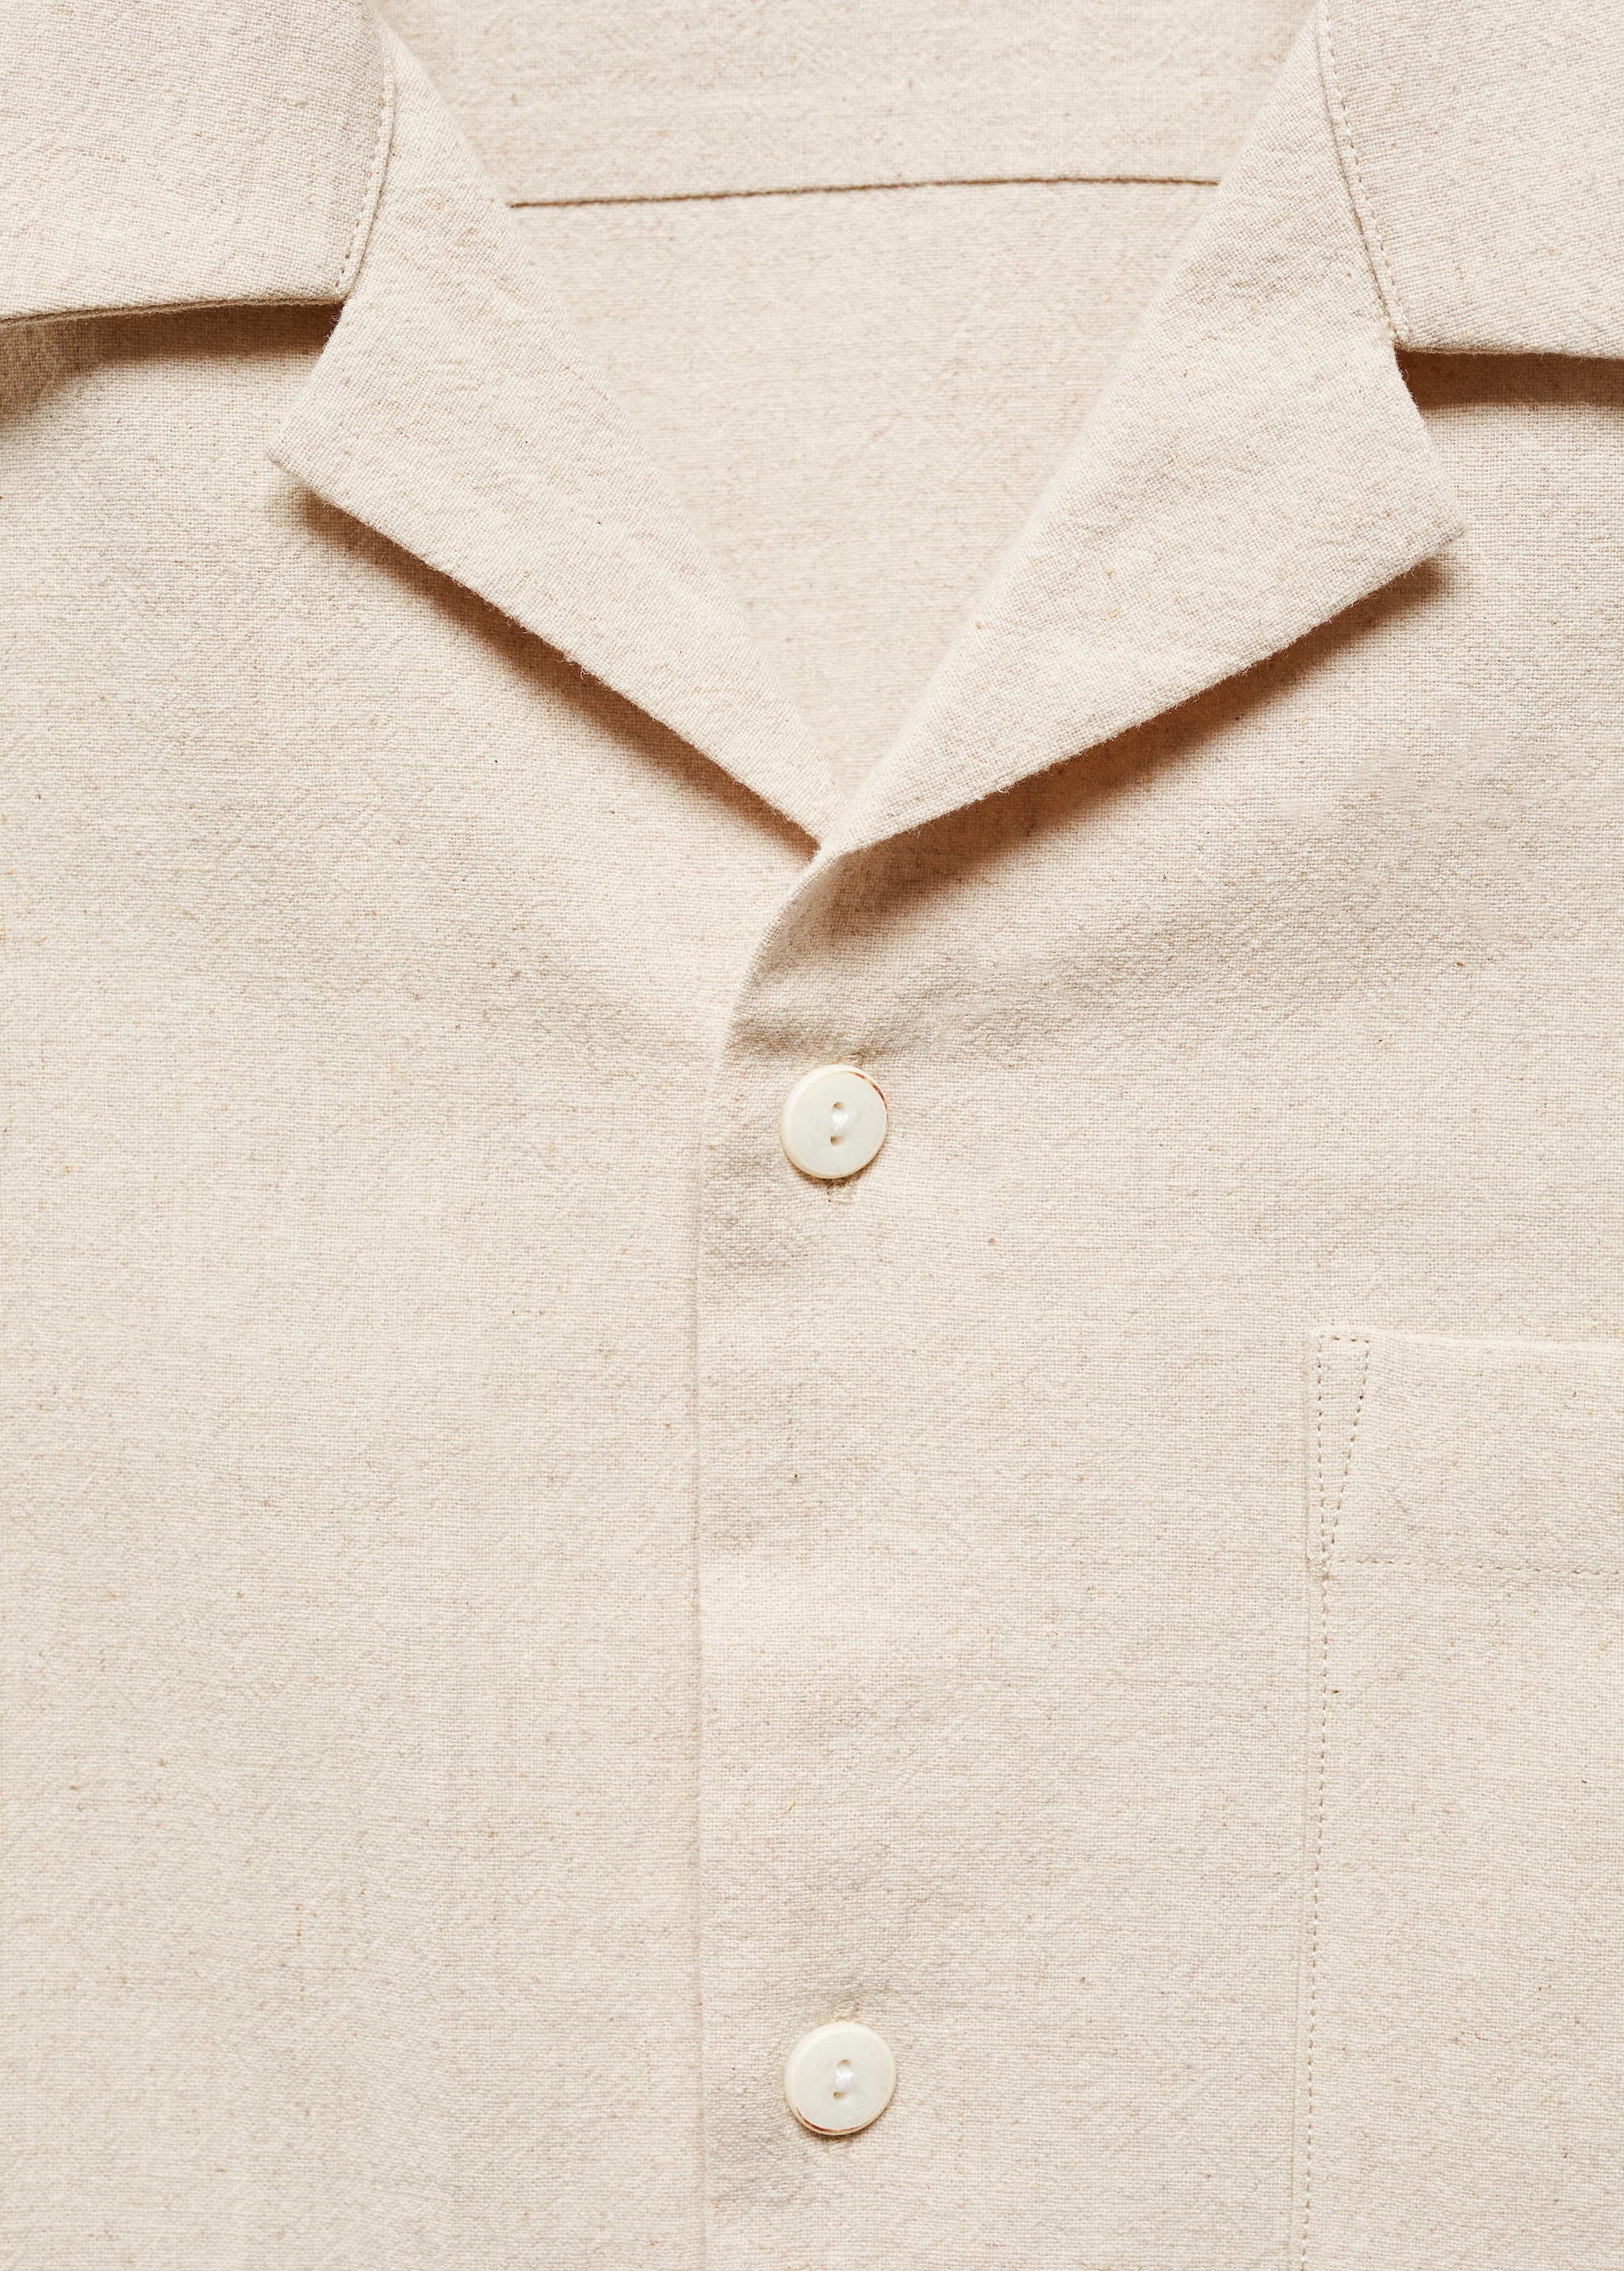 Рубашка изо льна с воротником боулинг и карманом - Деталь изделия 8